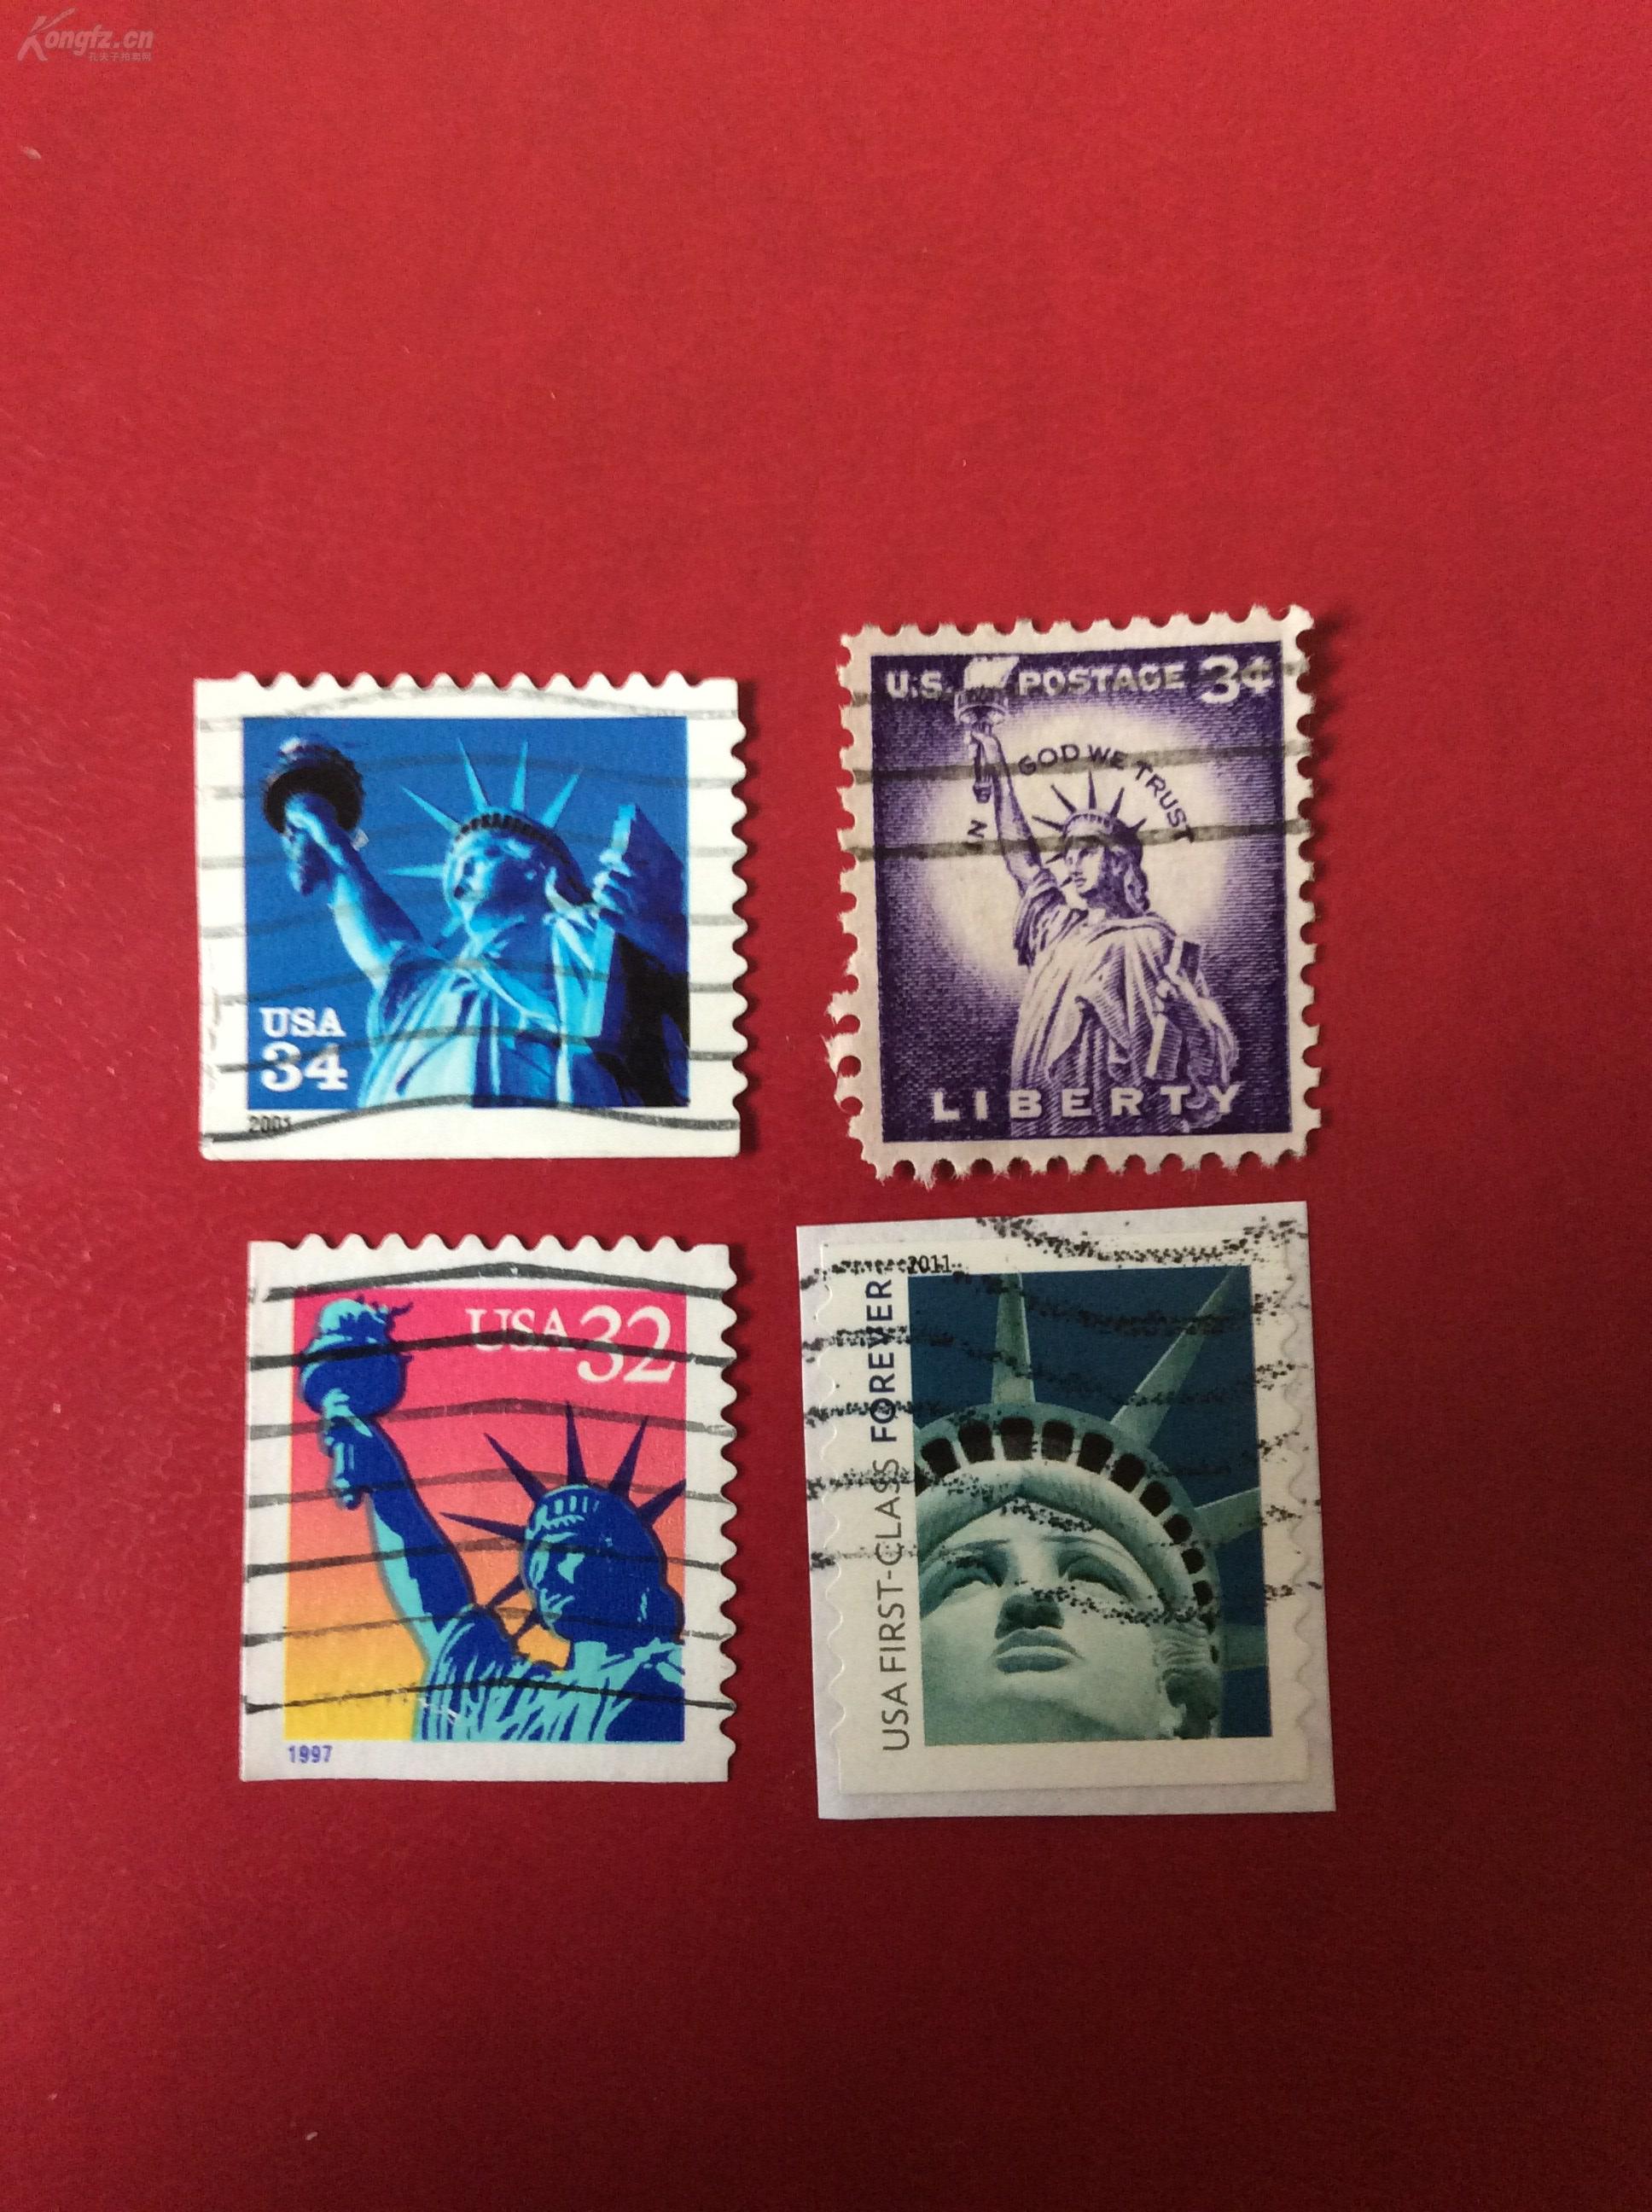 美国邮票上的人物图片